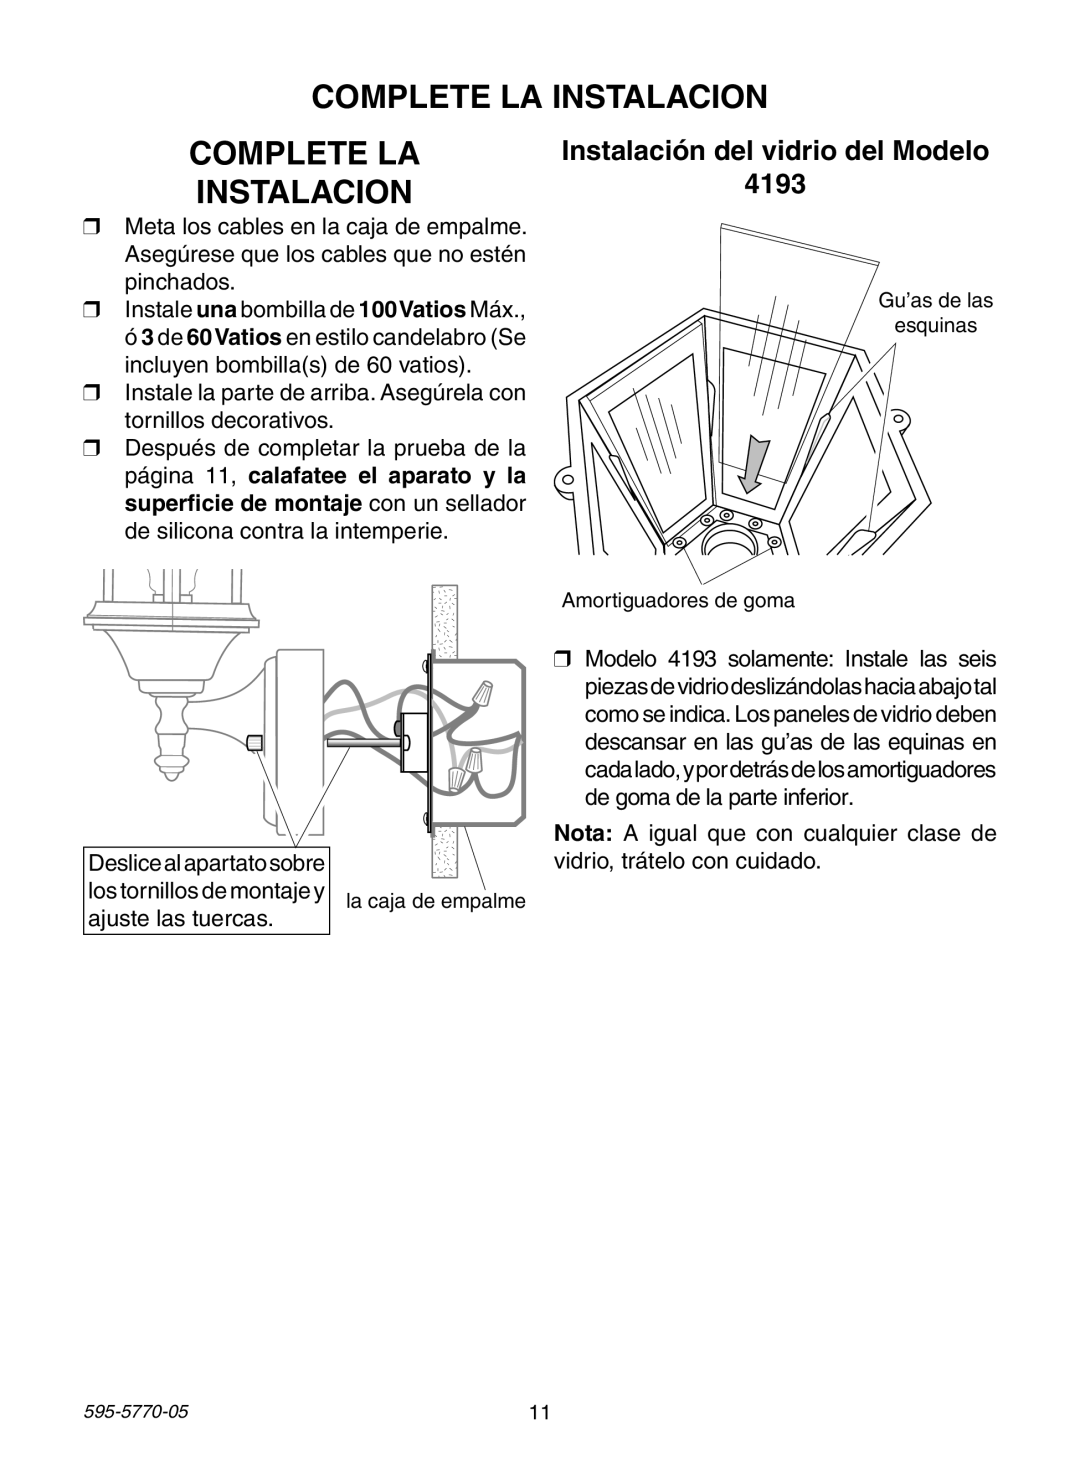 Heath Zenith HB-4190 Series manual Complete La Instalacion, Instalación del vidrio del Modelo 